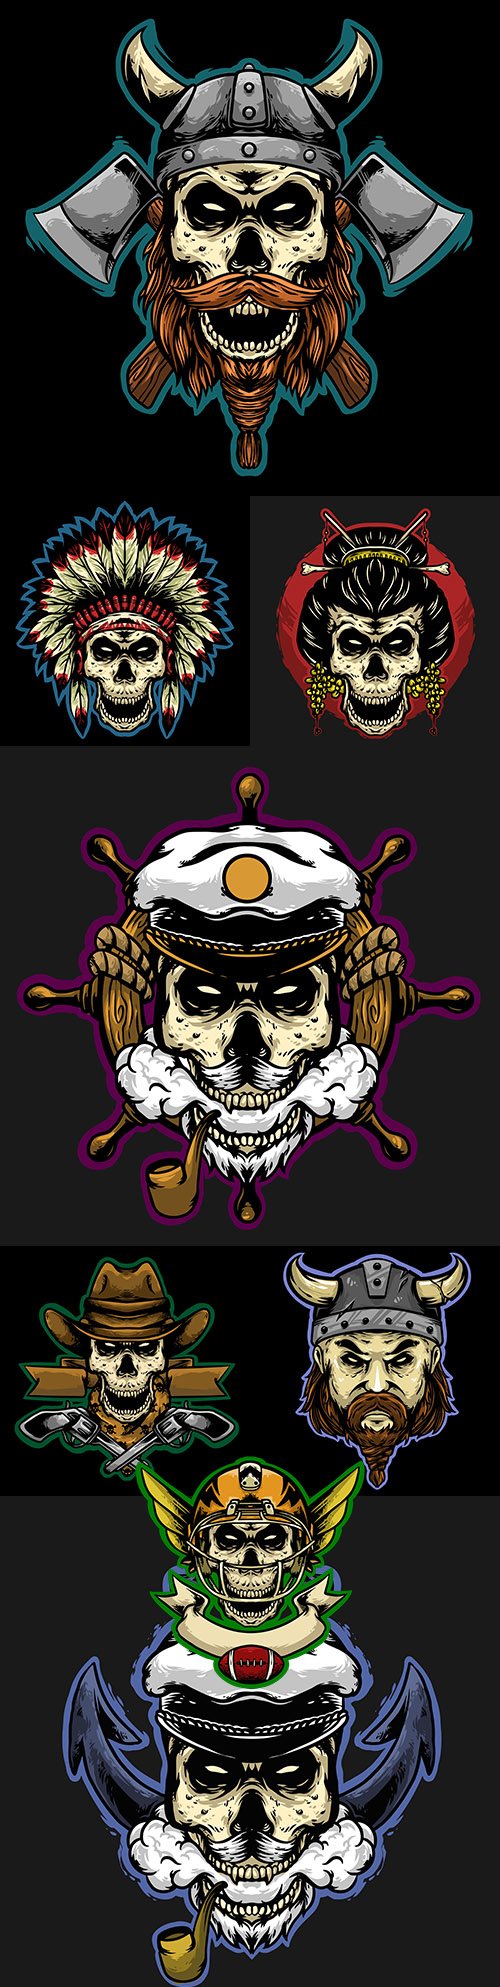 Grange skull head logo design illustration mascot